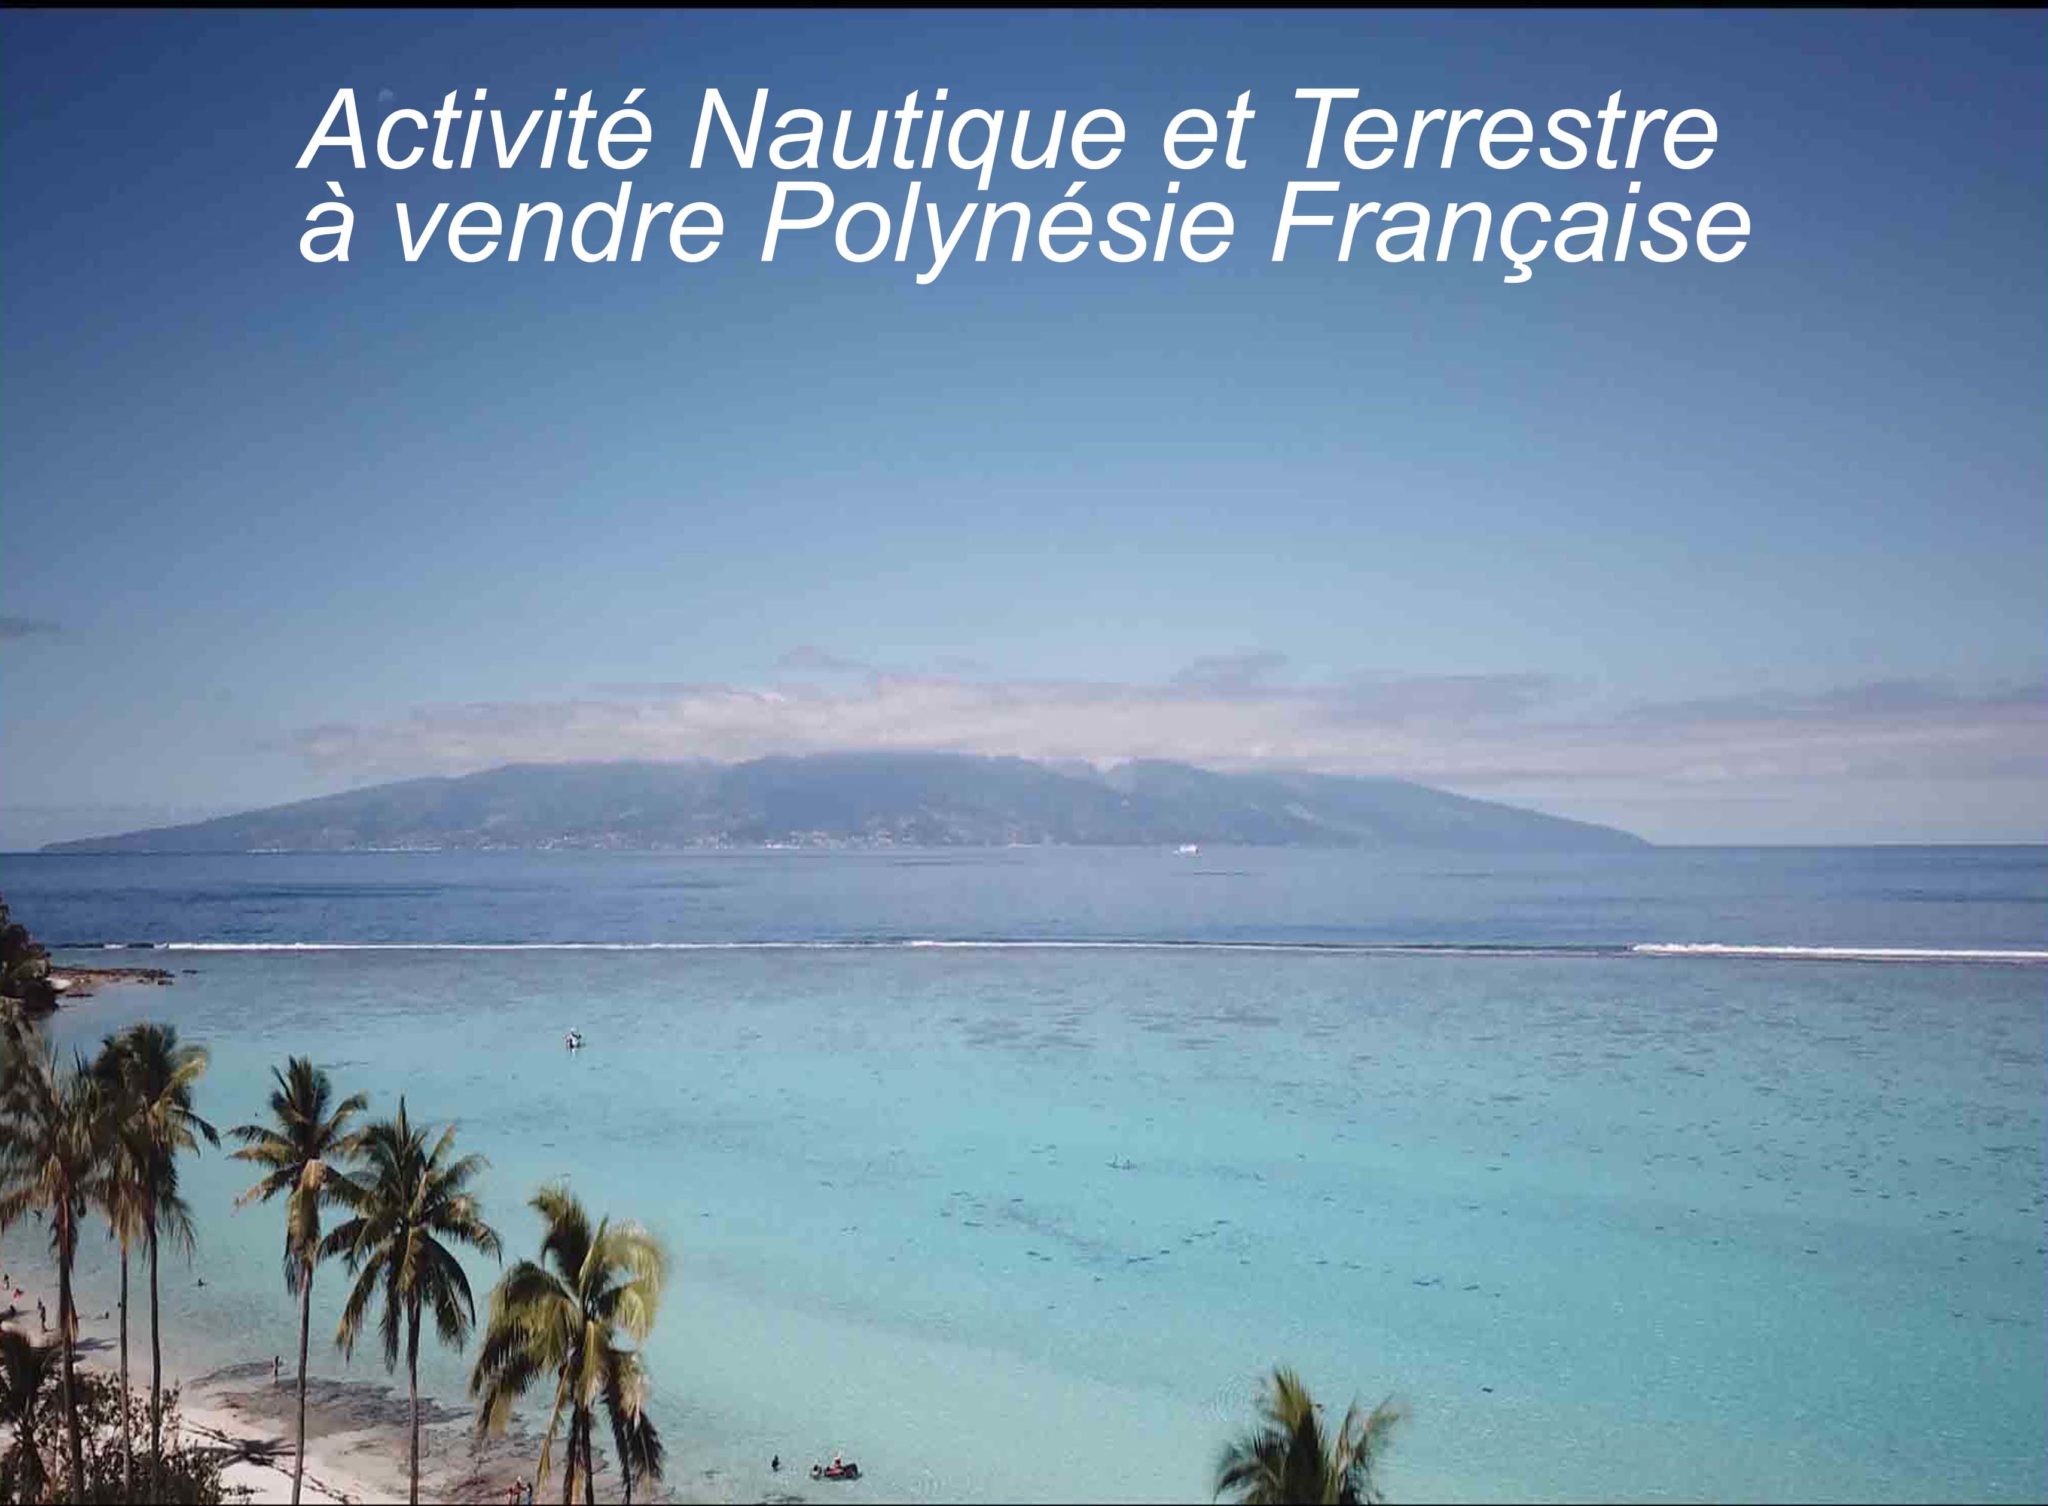 Activités Touristiques (nautique et terrestre) à vendre en Polynésie française (Moorea)